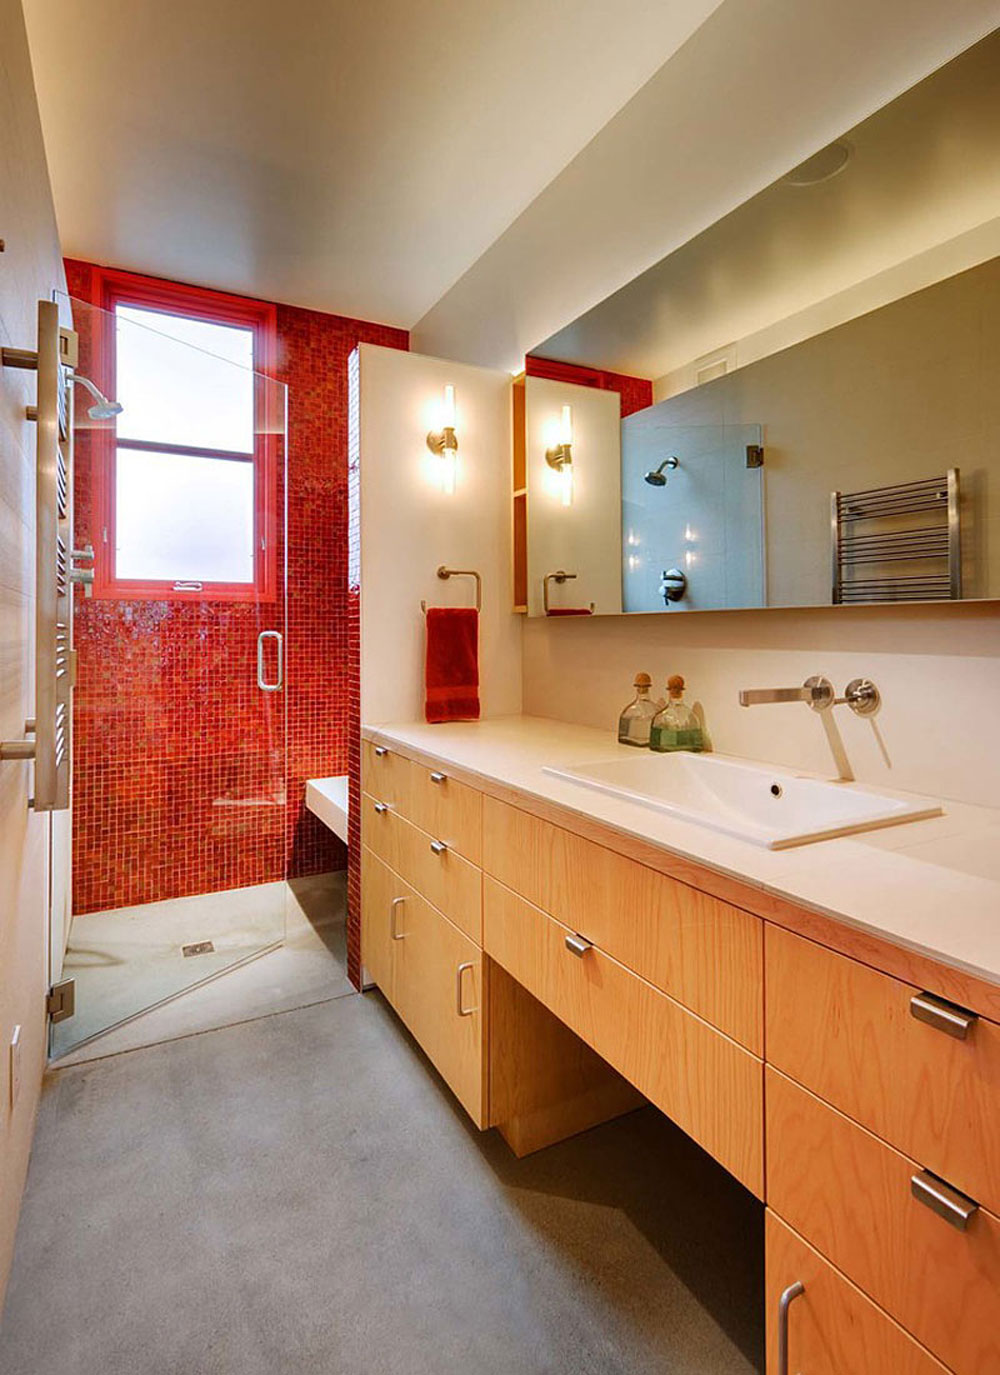 Letar du efter inspiration för modern badrumsinredning-3 Letar du efter inspiration för modern badrumsinredning?